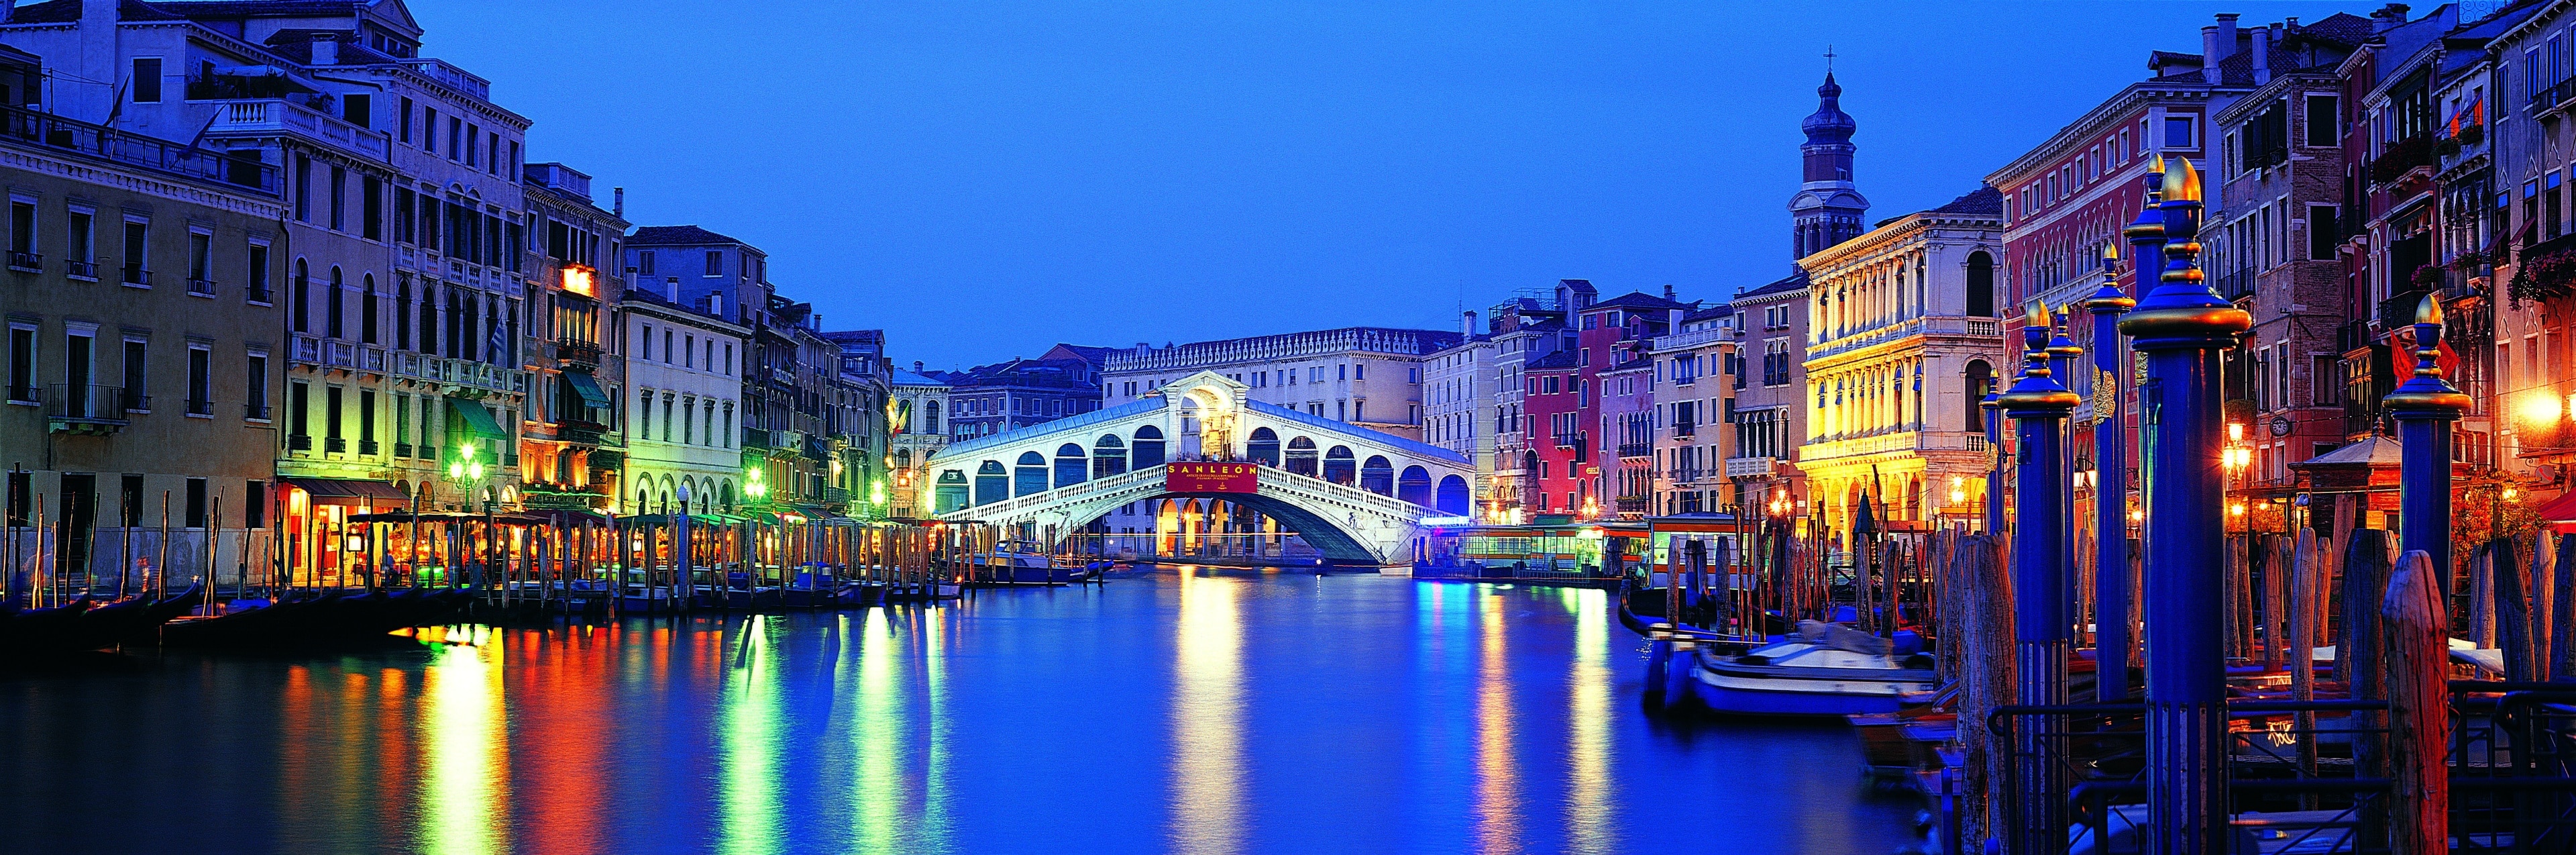 Attraversate il più antico e iconico ponte di tutta Venezia per godere di un'indimenticabile vista sul Canal Grande, esplorarne i numerosi negozi di souvenir e assaporare l'inconfondibile atmosfera della Serenissima.